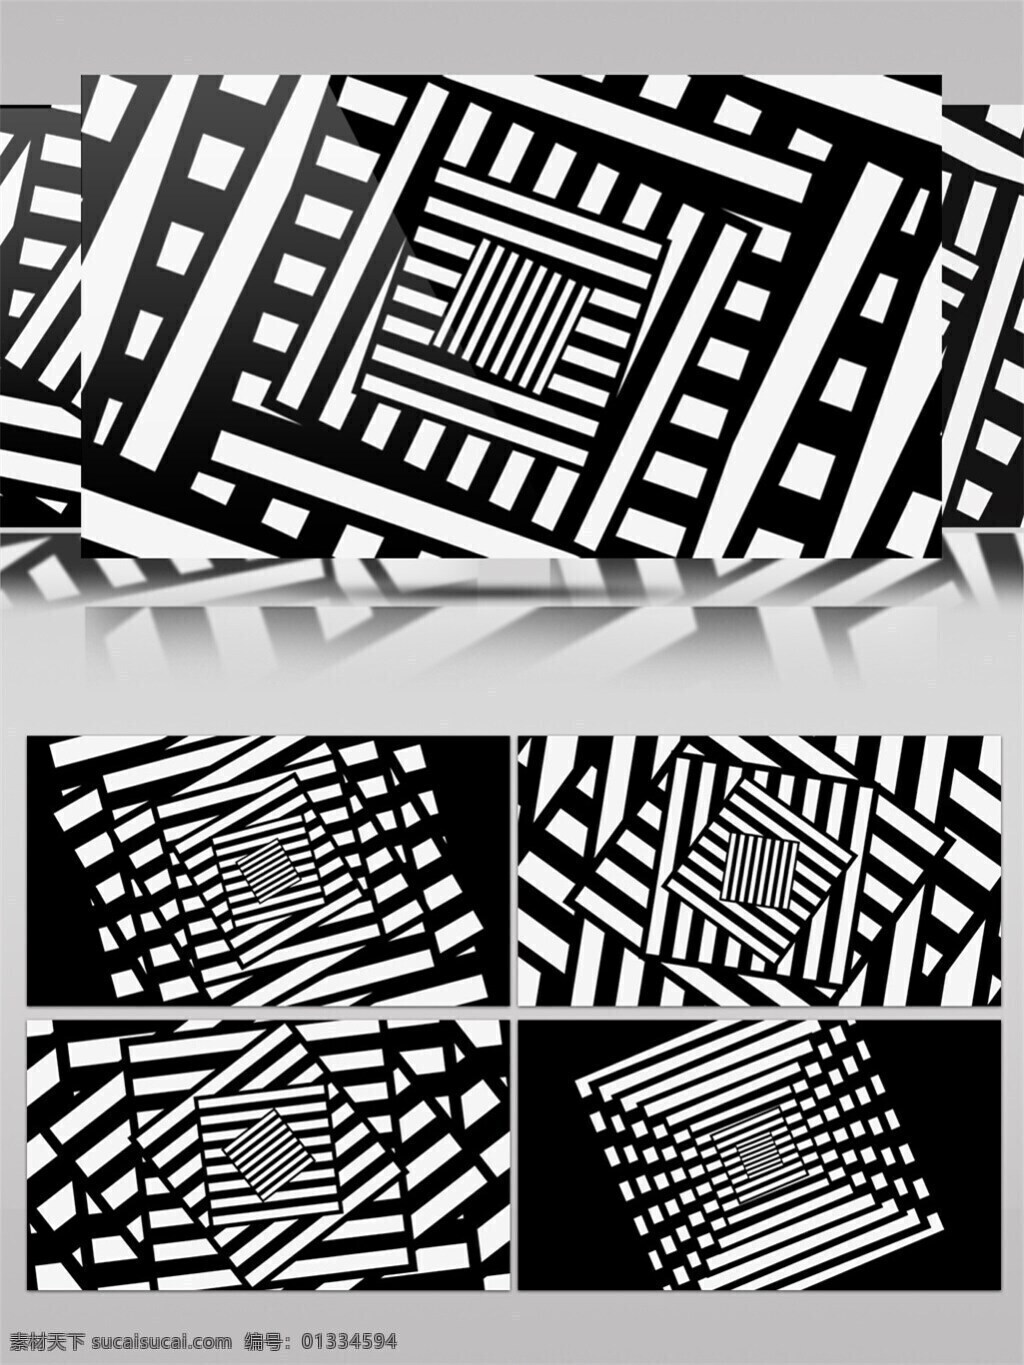 黑白 方格 高清 视频 创意设计 黑白方格 简约风格 生活创意 文字logo 炫酷黑白